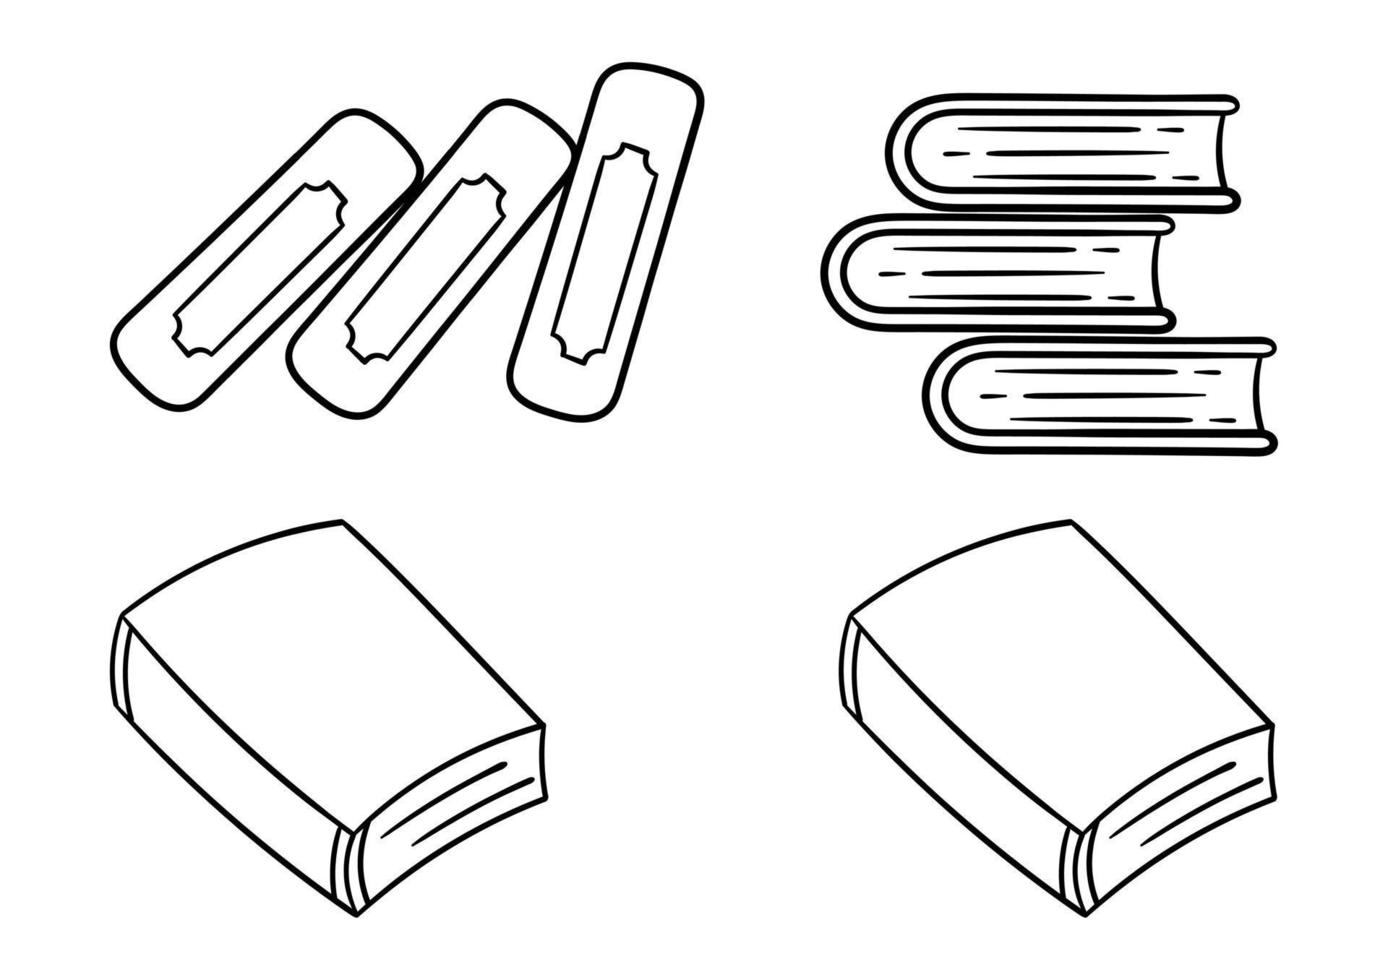 en samling handritade illustrationer av böcker vektor